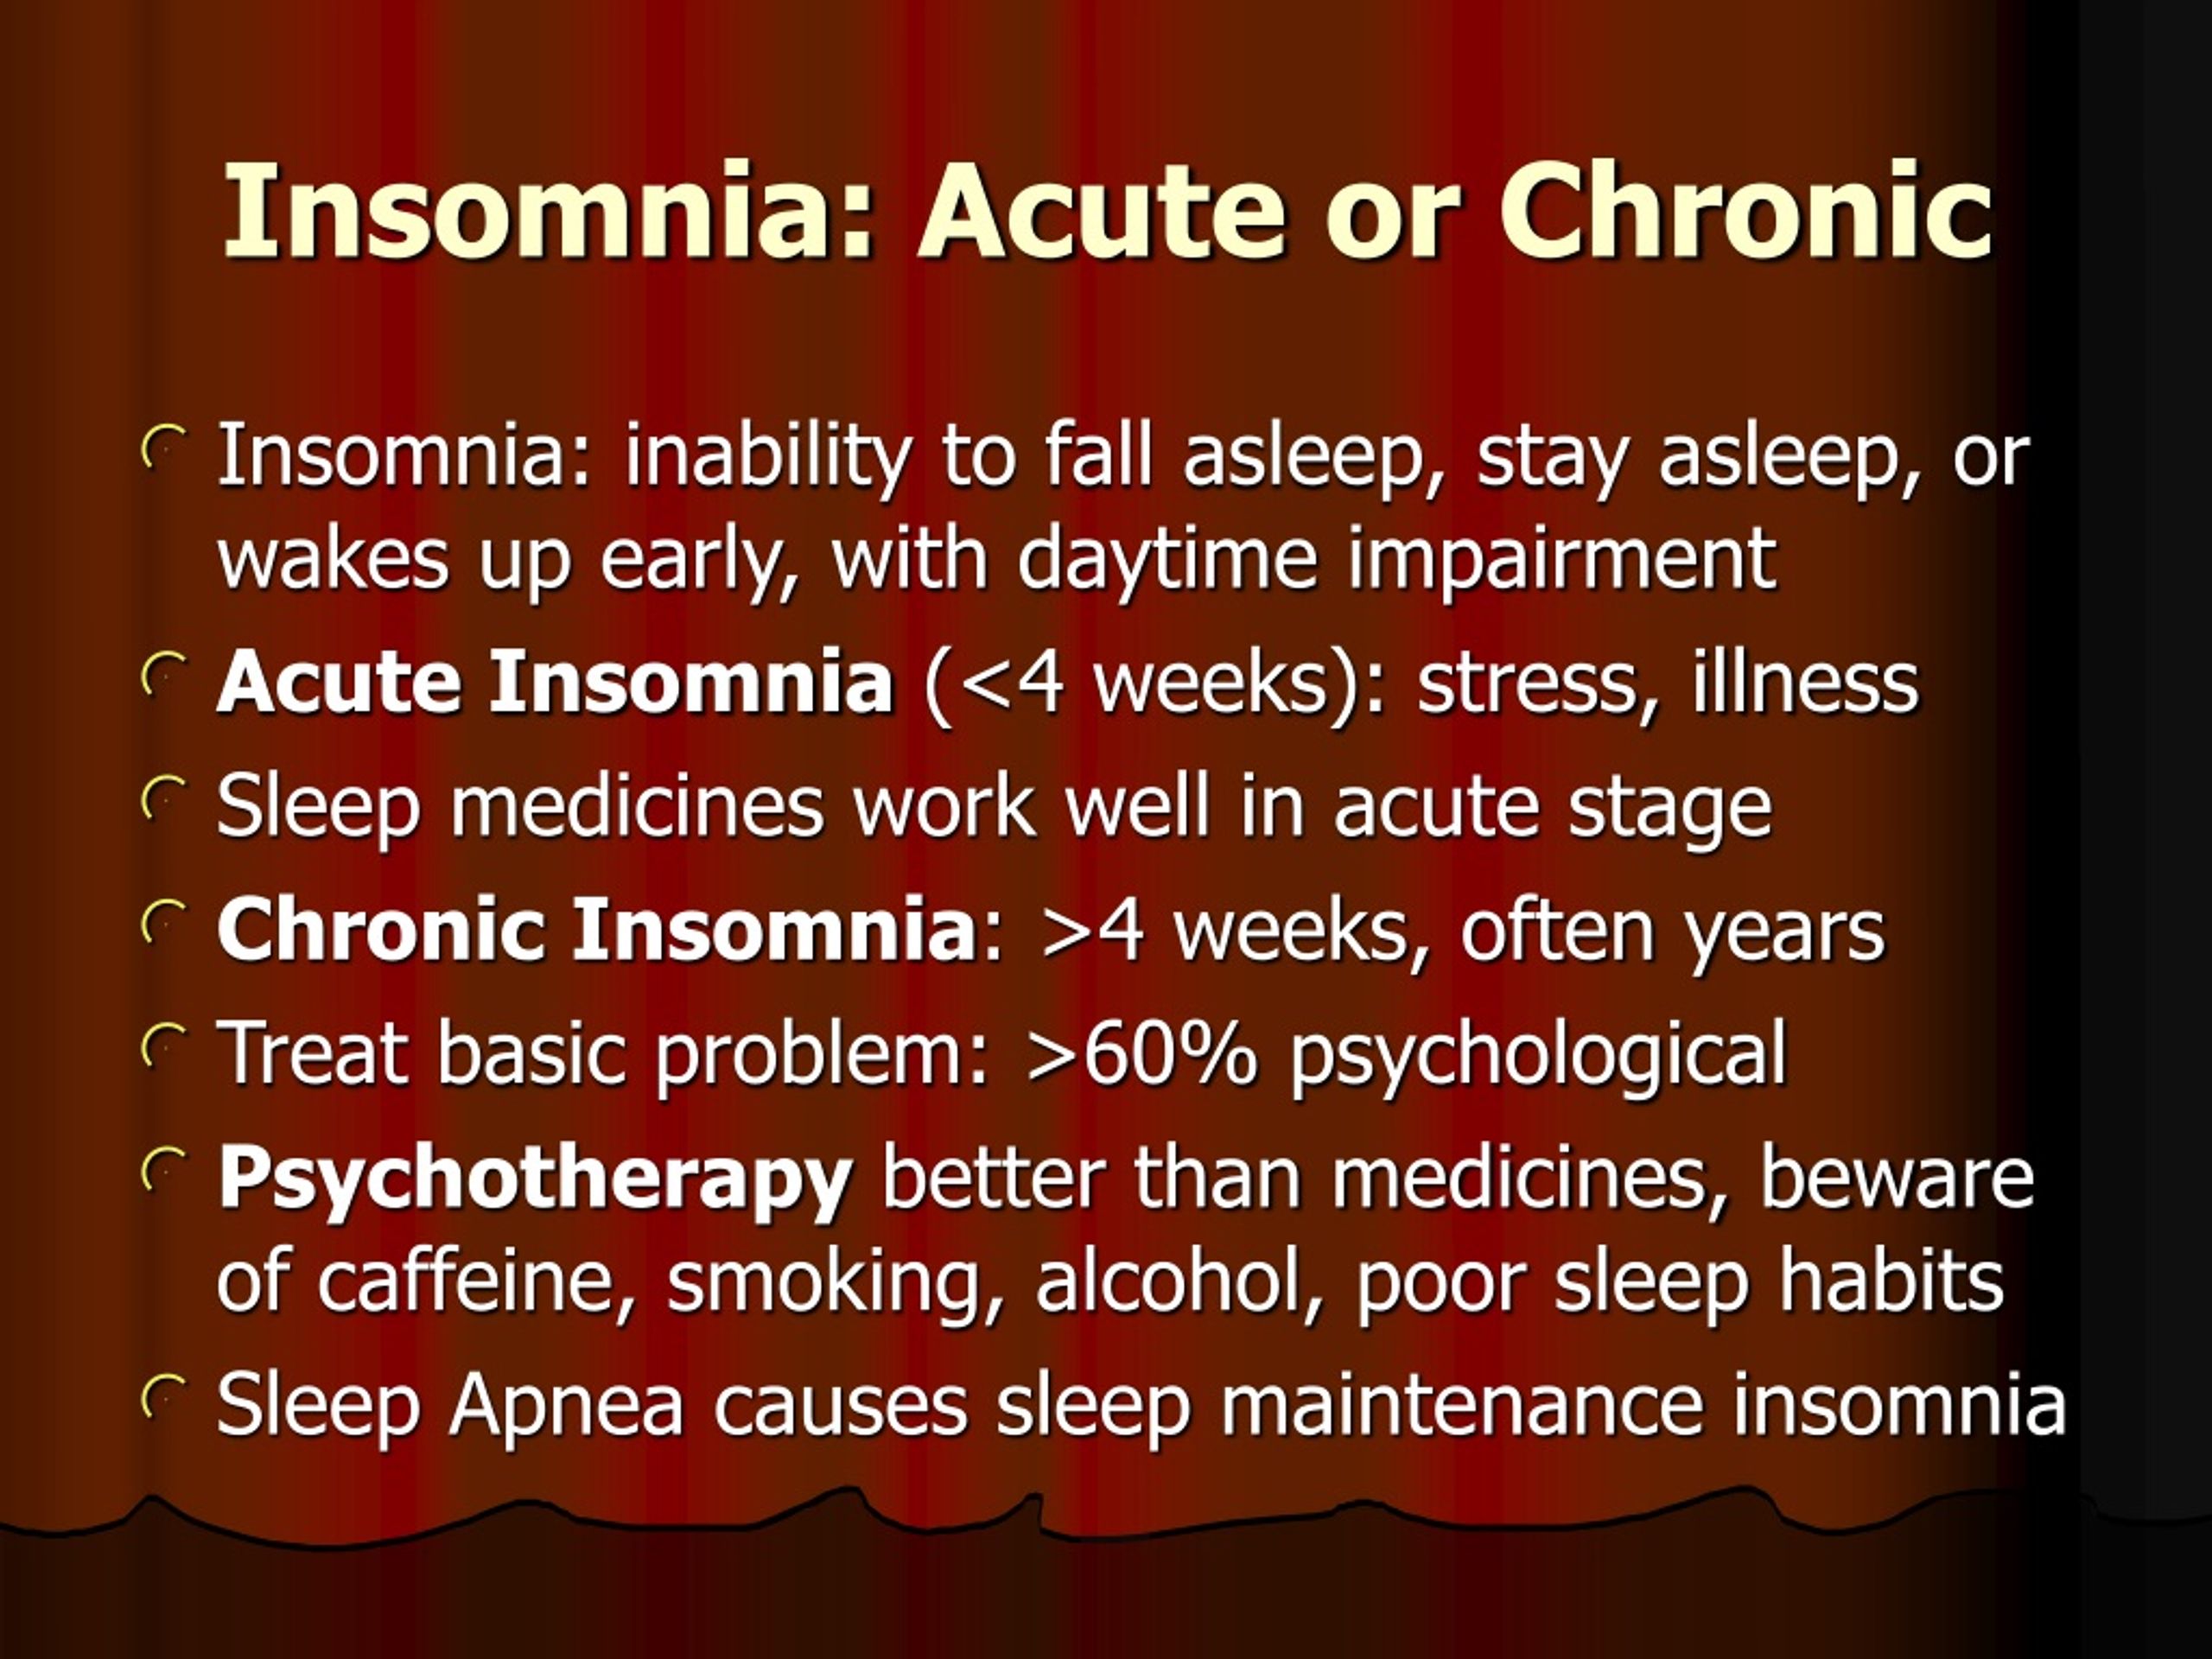 acute insomnia versus primary insomnia